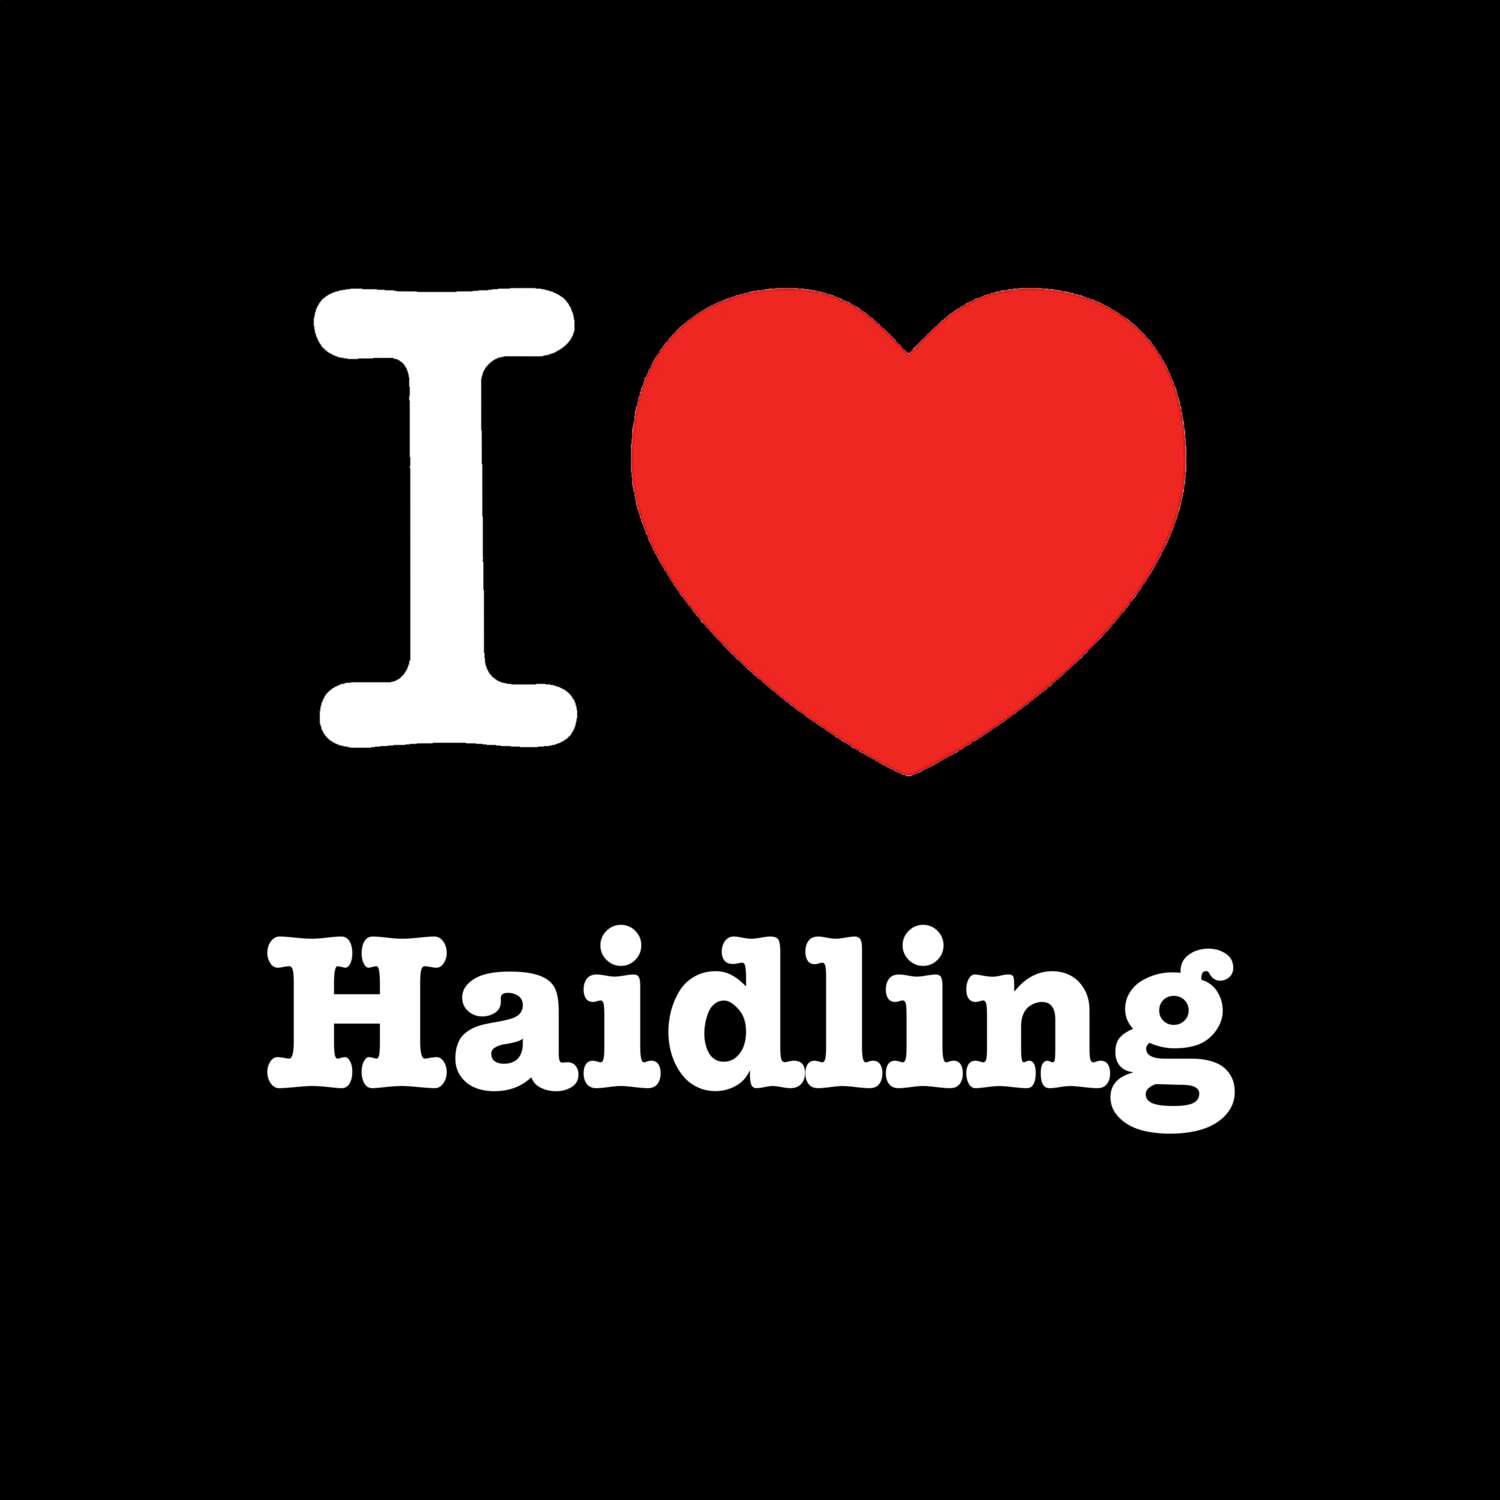 Haidling T-Shirt »I love«